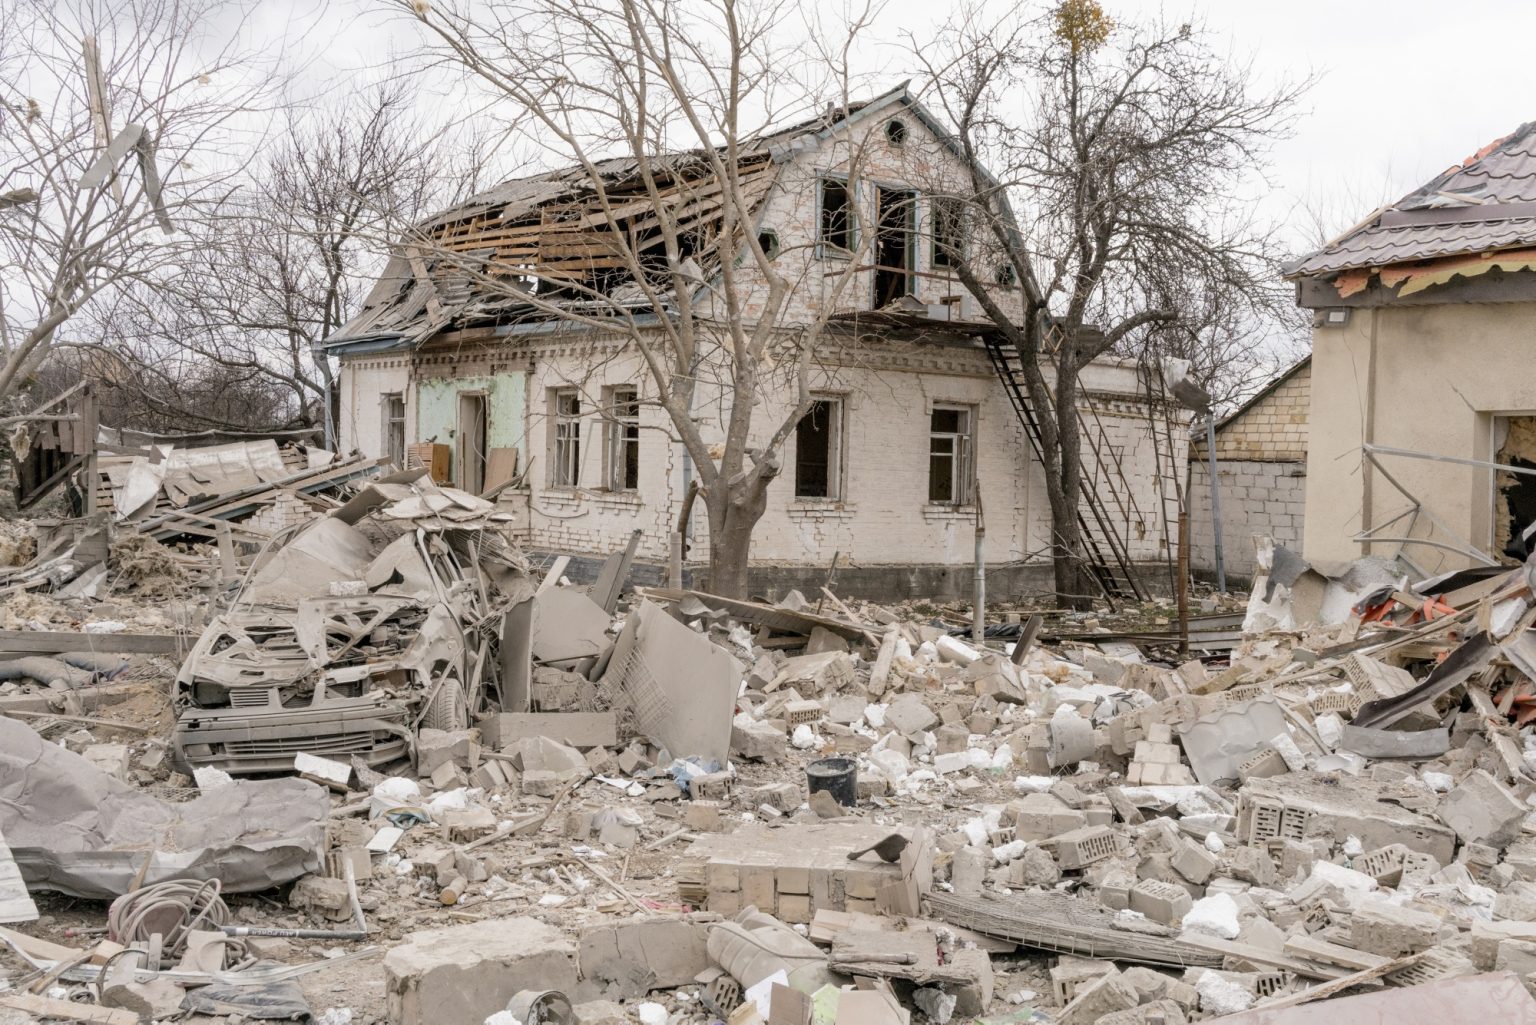 01559189 01557258 UKRAINE, Kyiv. March 06, 2022 - A building damaged by shelling in Markhalivka town.           As Russia invades Ukraine, thousands of Ukrainians are fleeing the country to find shelter in bordering countries. 
---------
Con l'invasione russa ai danni dell'Ucraina, migliaia di ucraini sono in fuga dalla nazione d'origine per cercare rifugio nelle nazioni confinanti.*** SPECIAL   FEE   APPLIES ****** SPECIAL   FEE   APPLIES *** *** Local Caption *** 01559189